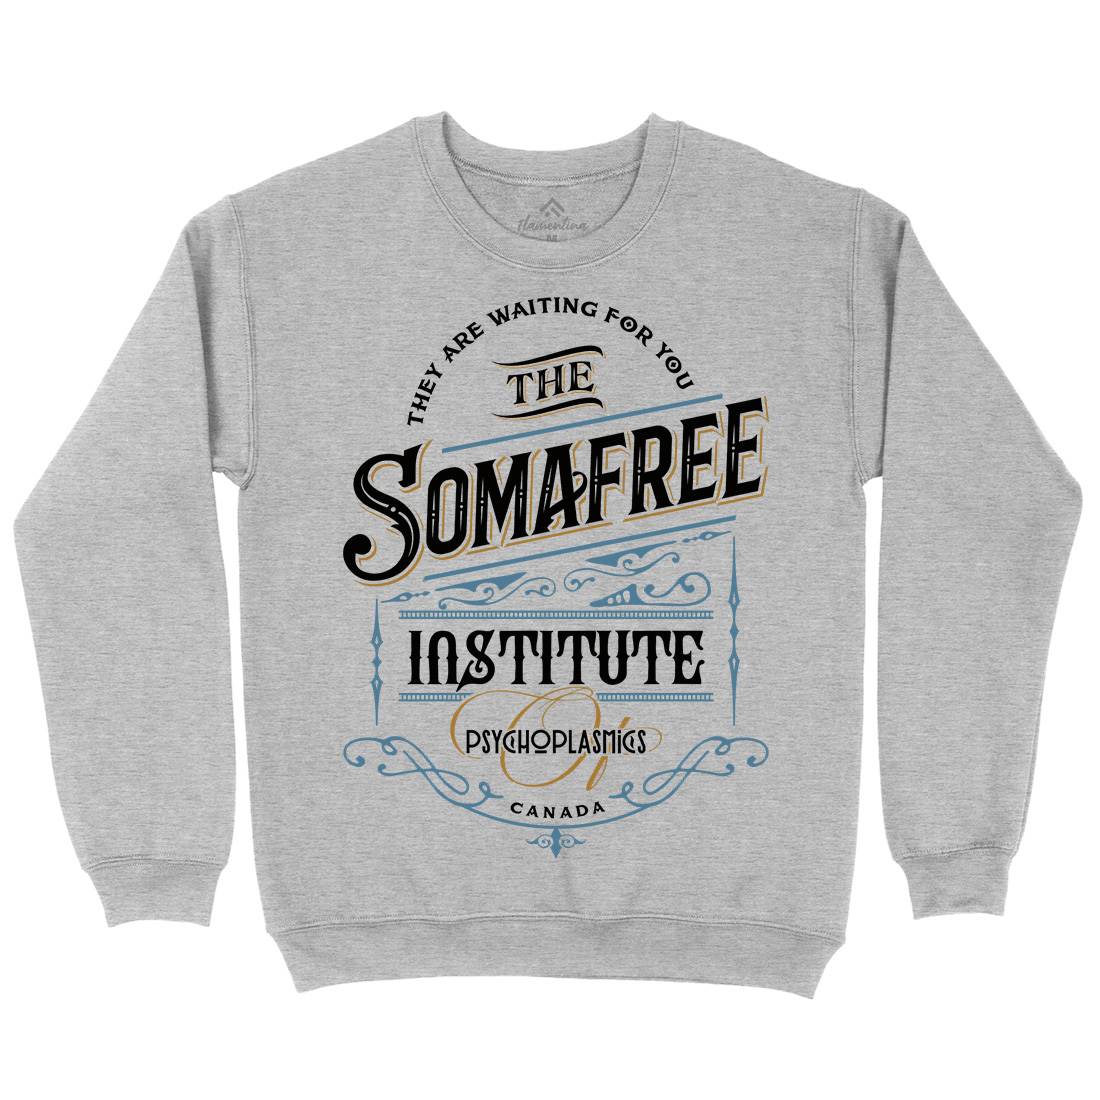 Somafree Institute Kids Crew Neck Sweatshirt Horror D345